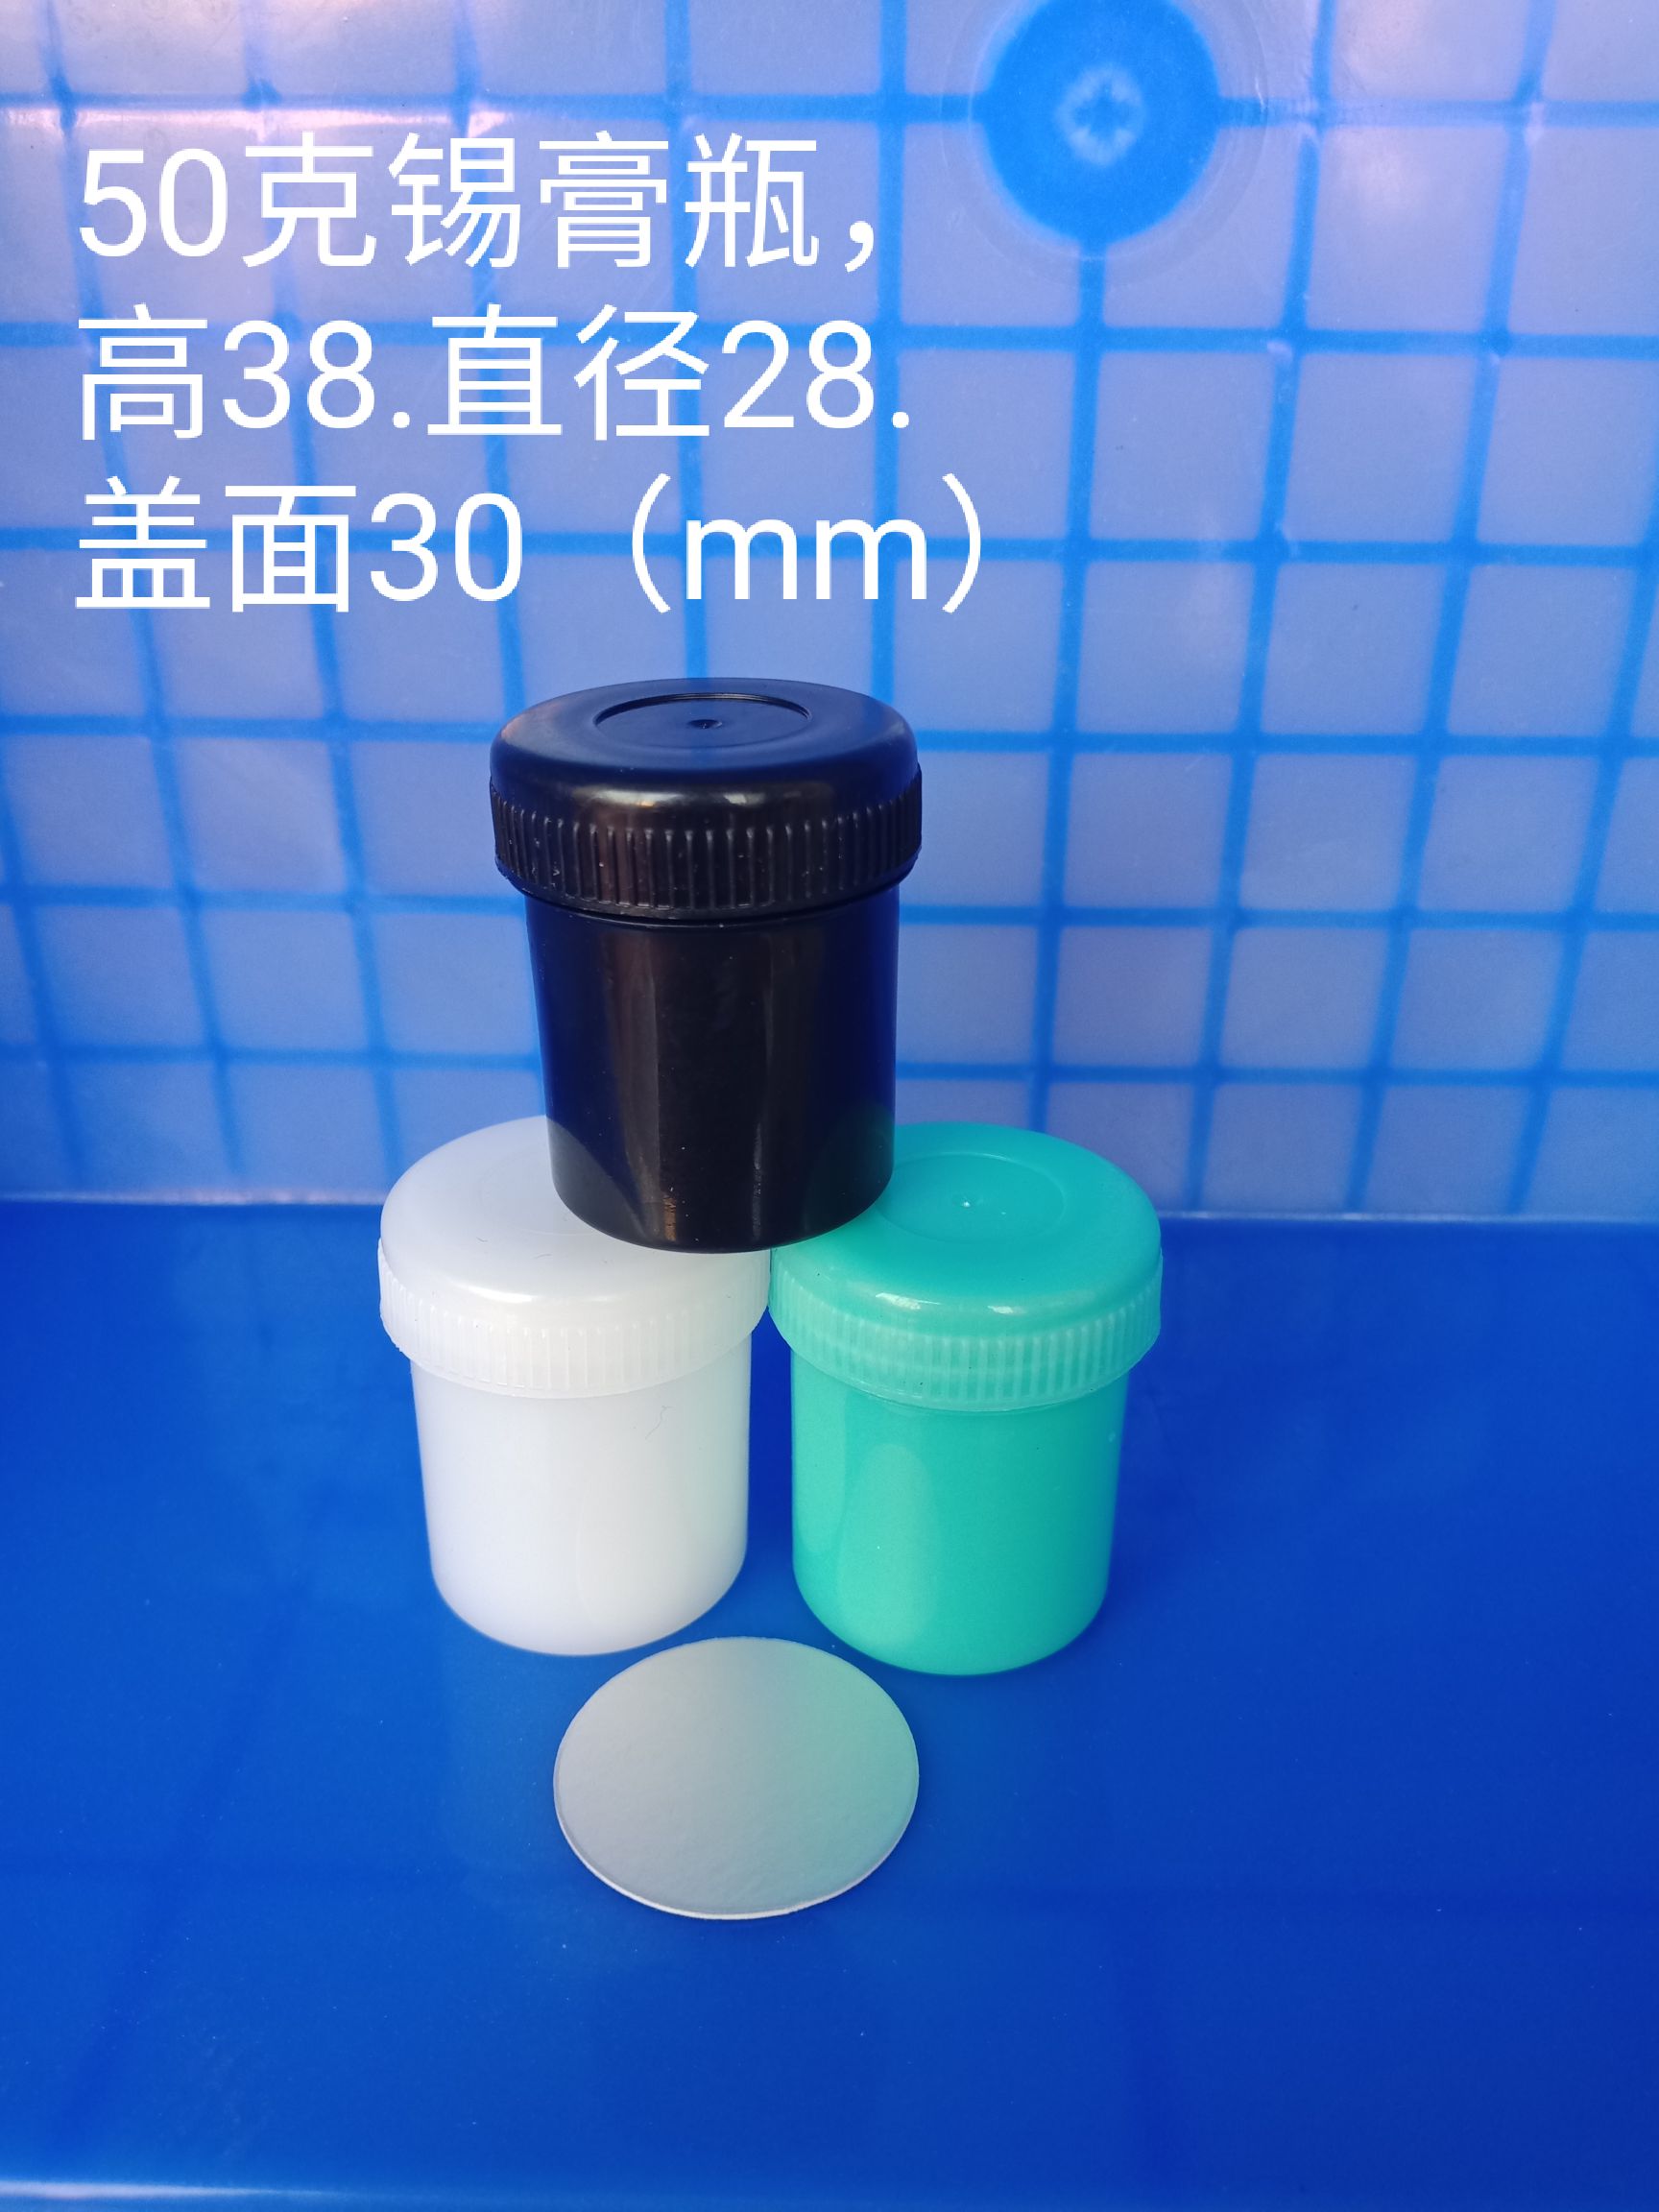 供应50克锡膏罐锡膏瓶 锡膏罐 广东省直销样品罐 面霜瓶